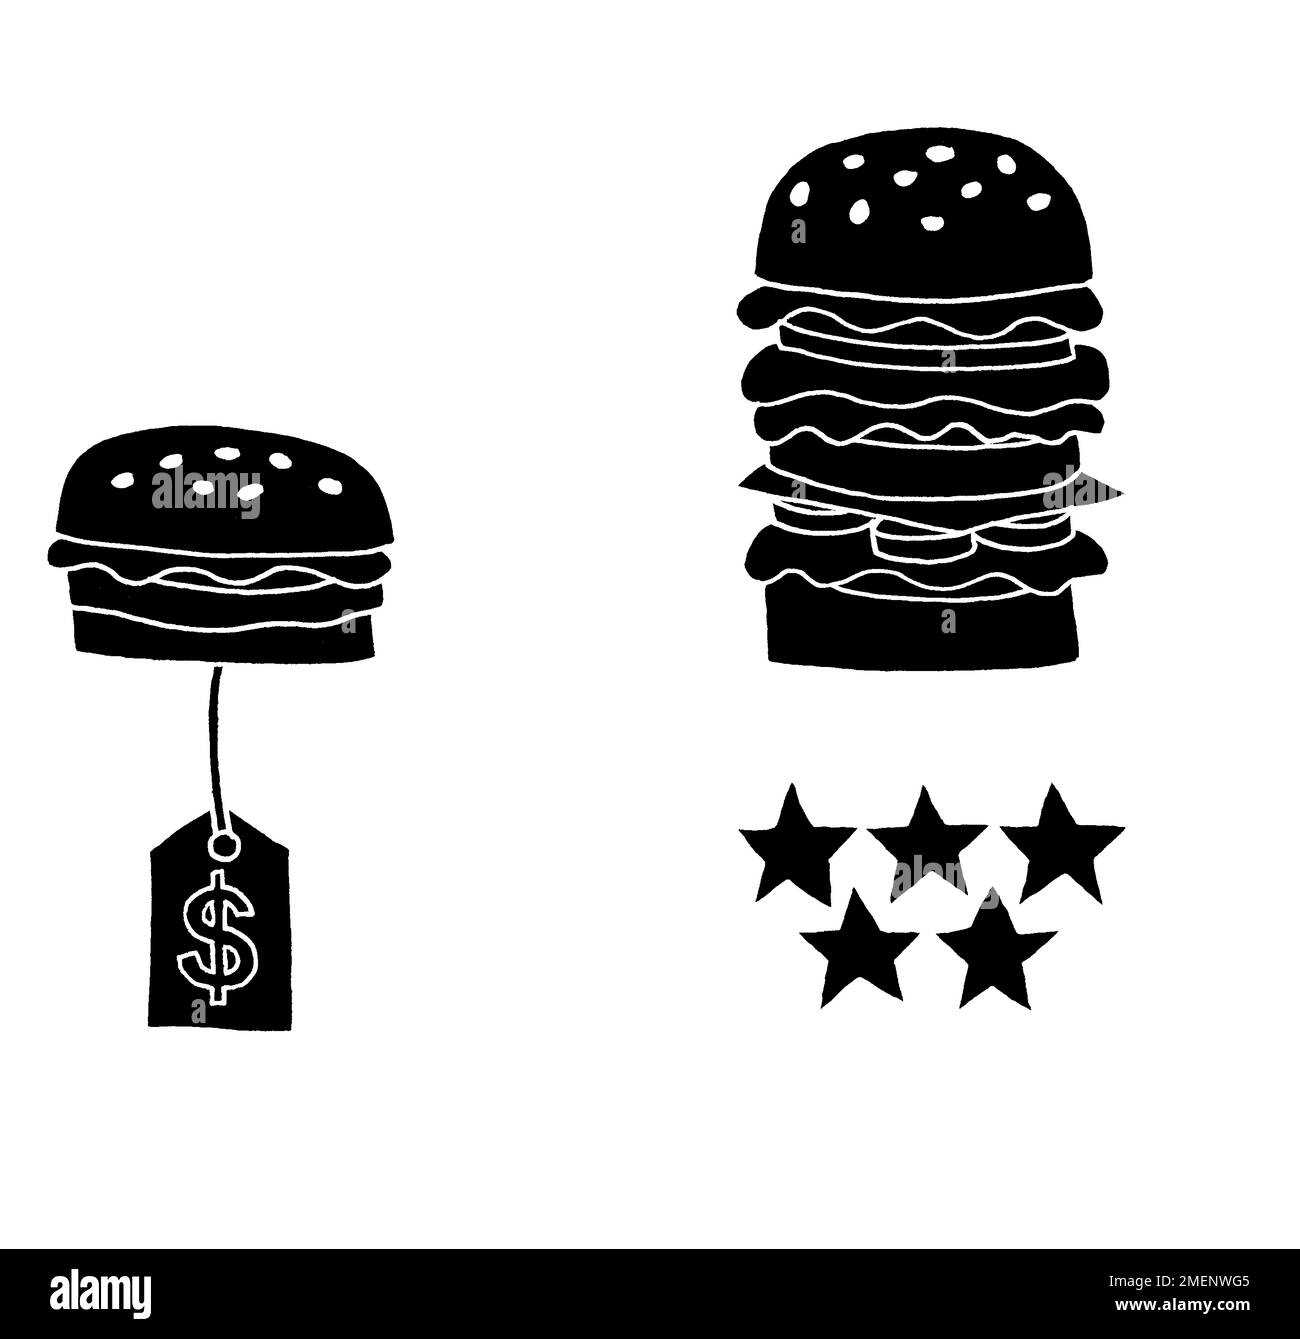 Illustrazione in bianco e nero del confronto hamburger, a buon mercato vs costoso Foto Stock